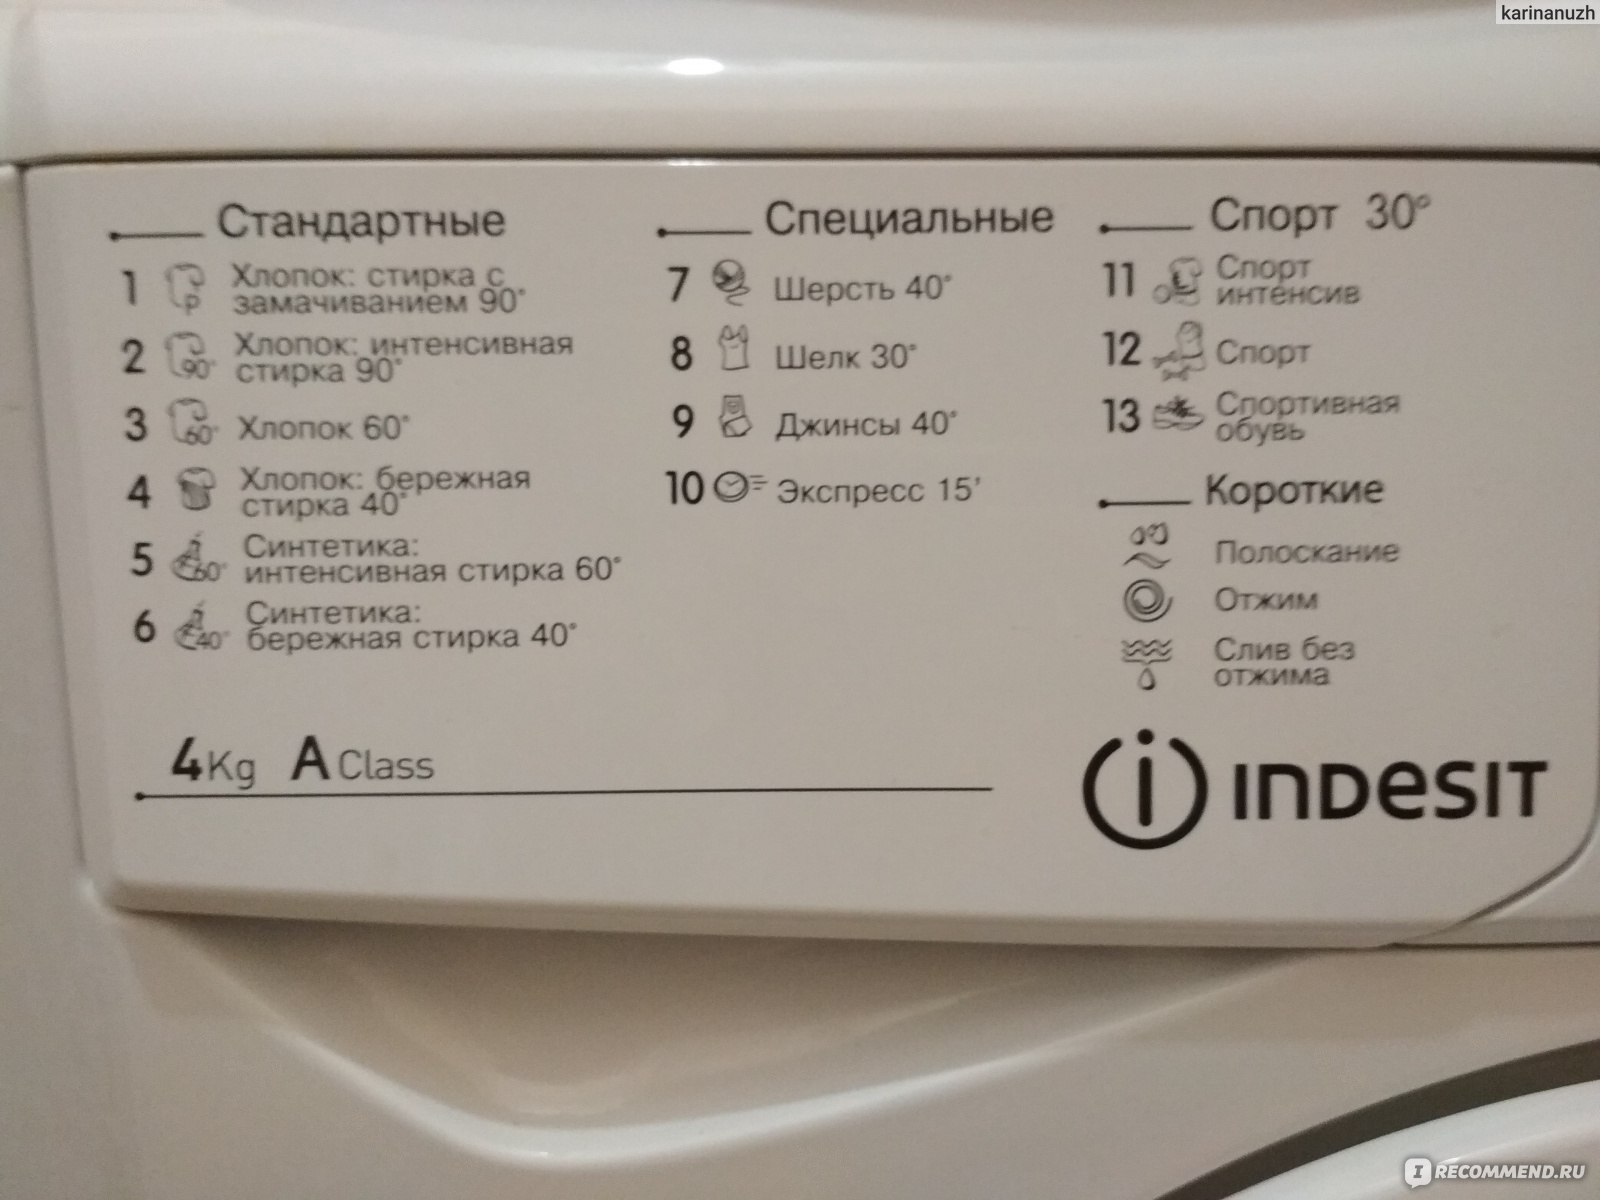 Сколько по времени стирает стиральная машинка. Стиральная машинка Индезит IWUB 4105 режимы стирки. Индезит стиральная машина режимы 5кг. Машинка Индезит IWUB 4085 режимы стирки. Машинка Индезит стиральная режимы 4 кг.